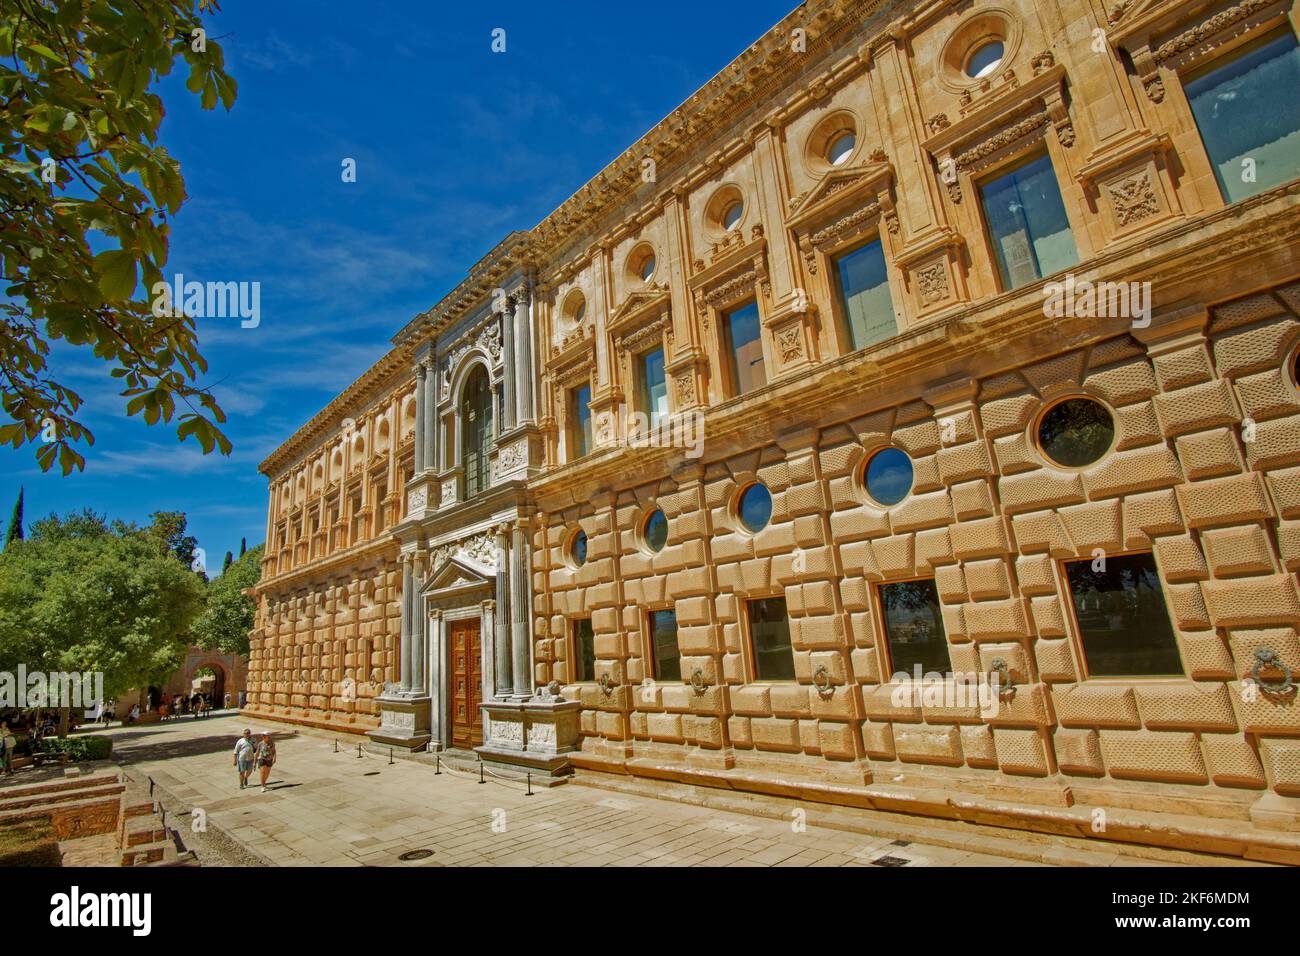 Le Palais de Charles 5th d'Espagne situé dans le complexe du Palais Nasrid à Grenade, Espagne. Banque D'Images